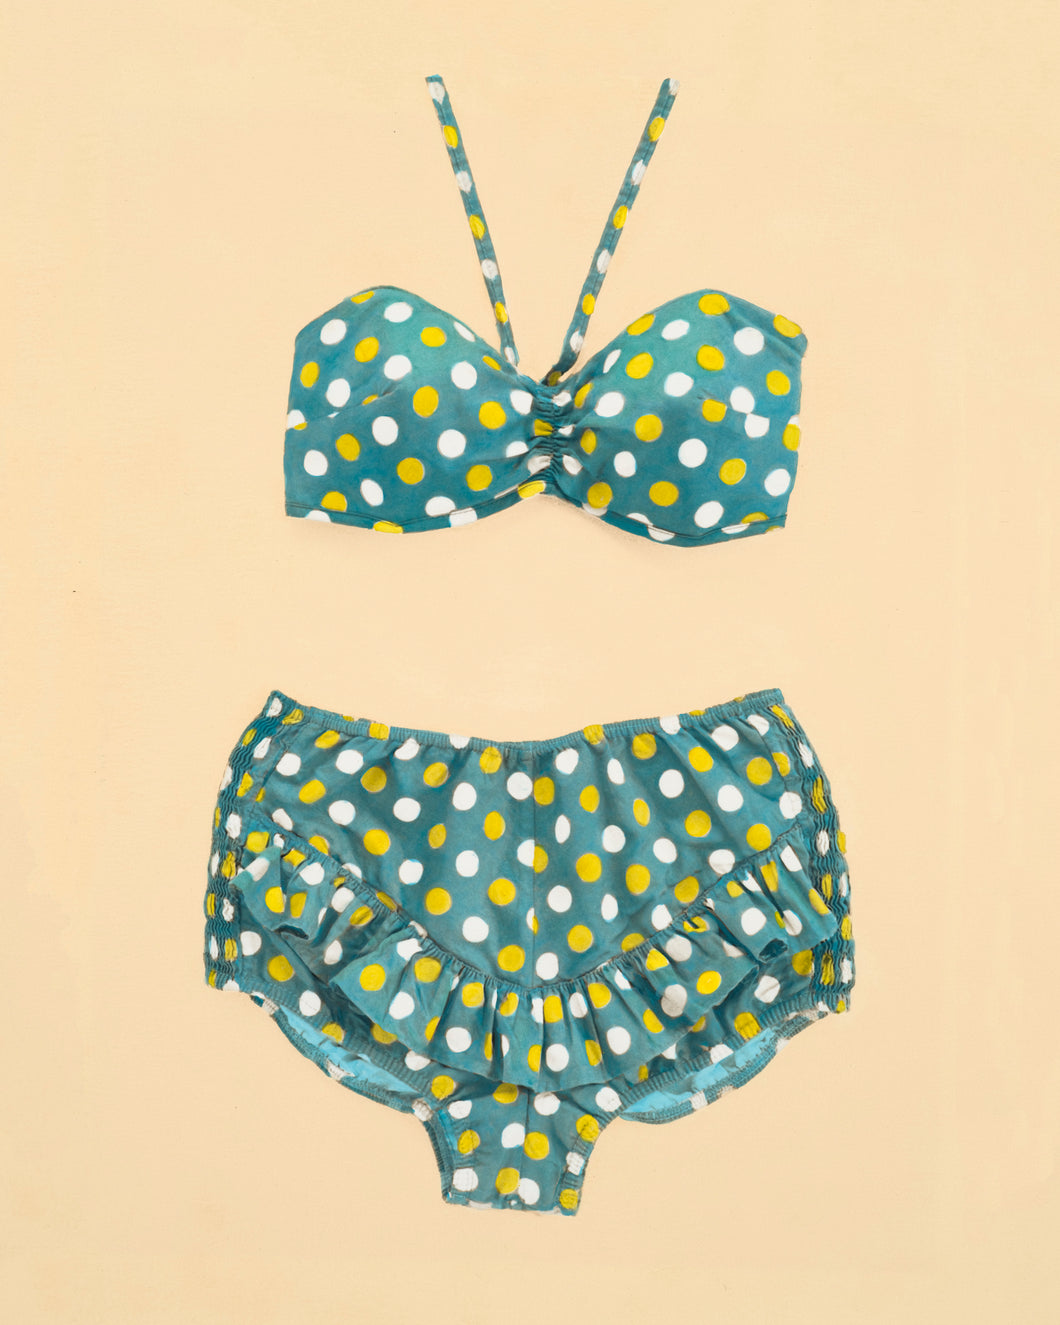 Full of Dots Vintage Swimsuit Art